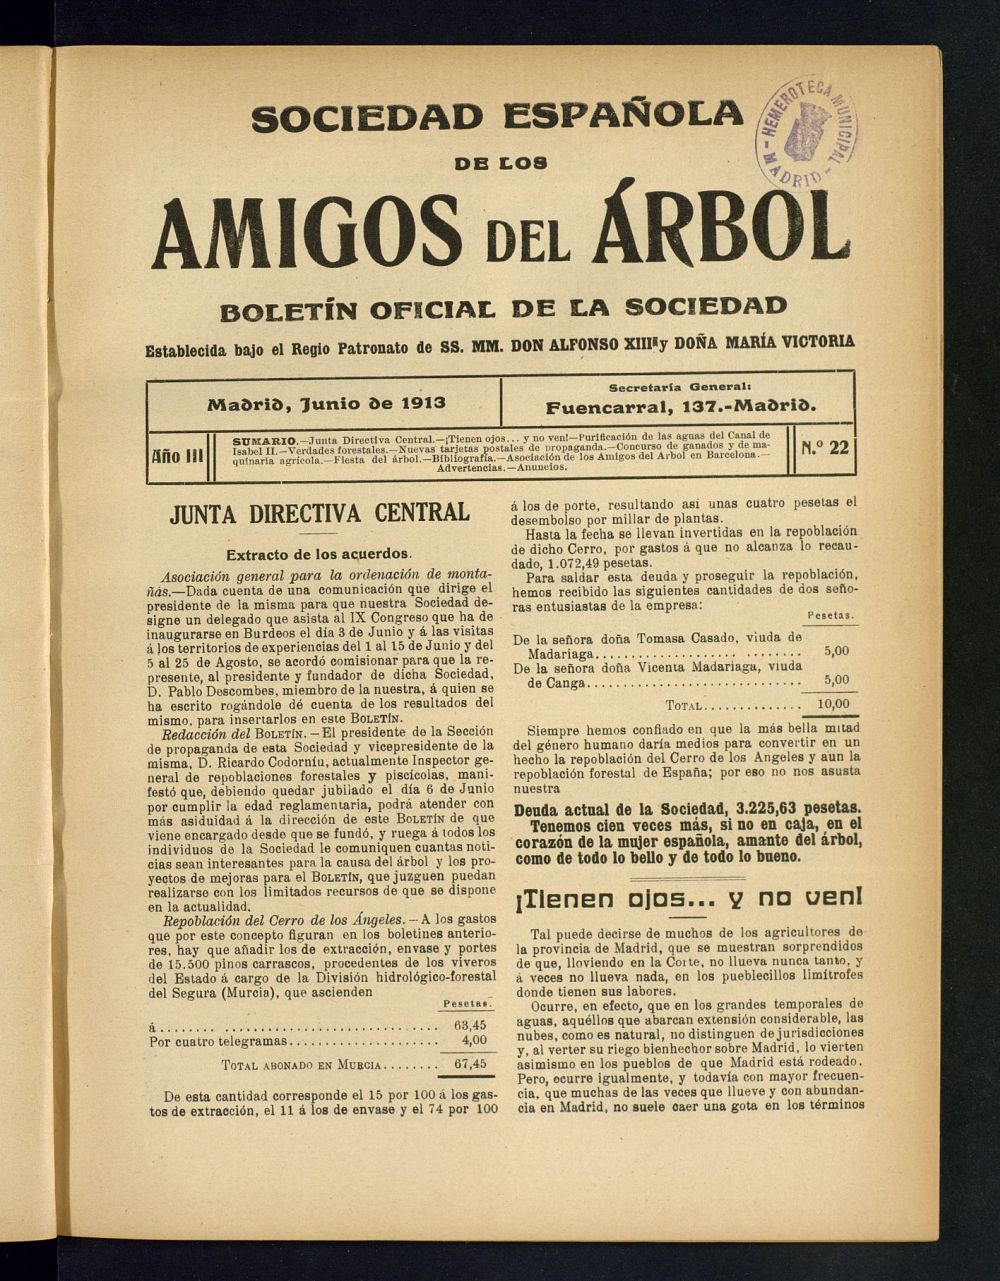 Boletn Comisin organizadora de la Sociedad Espaola de los amigos del rbol de junio de 1913